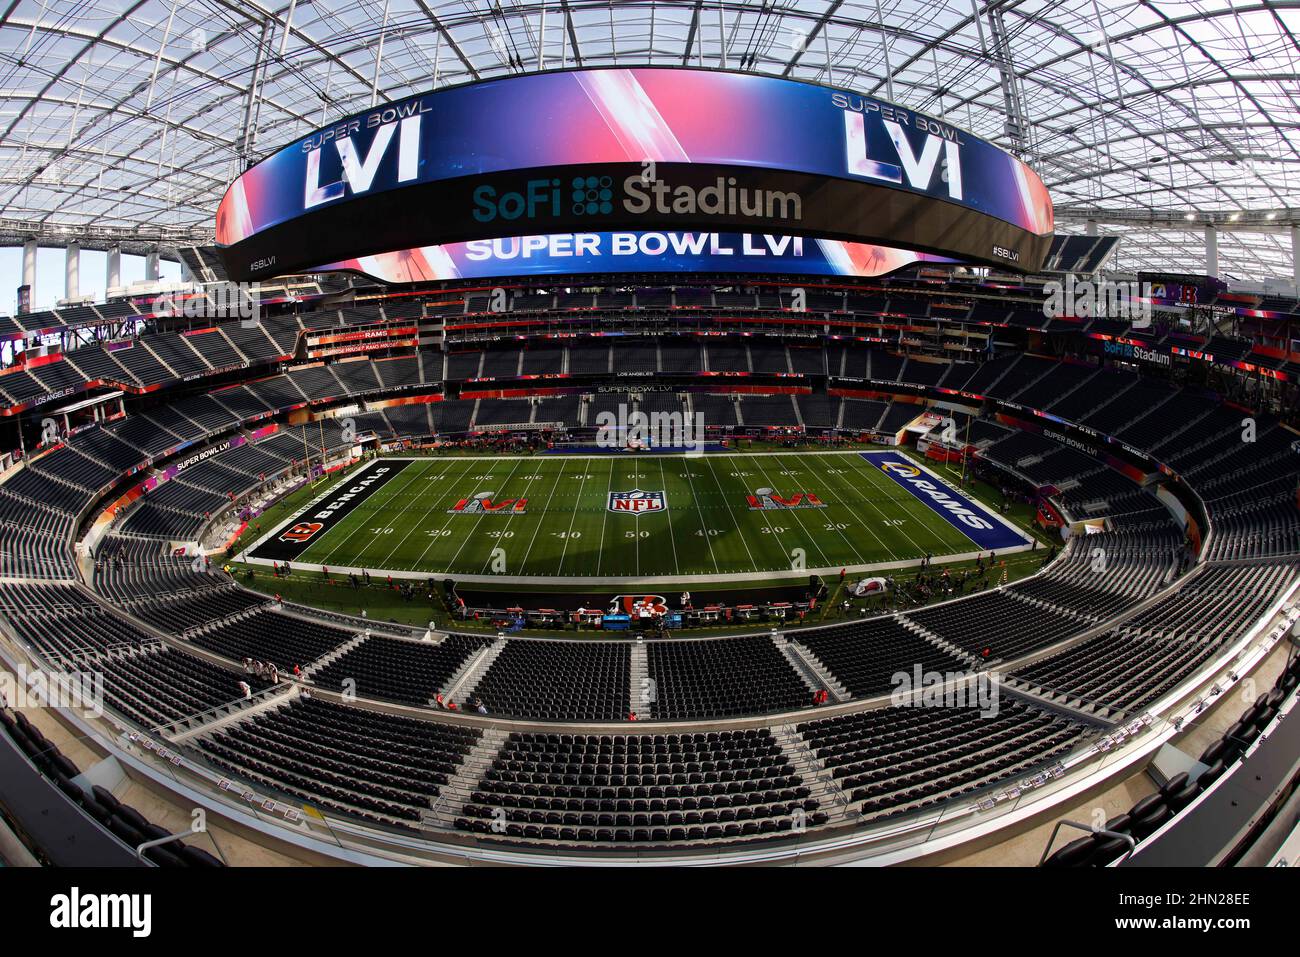 Los Angeles to host Super Bowl LVI in Feb. 2022 at SoFi Stadium